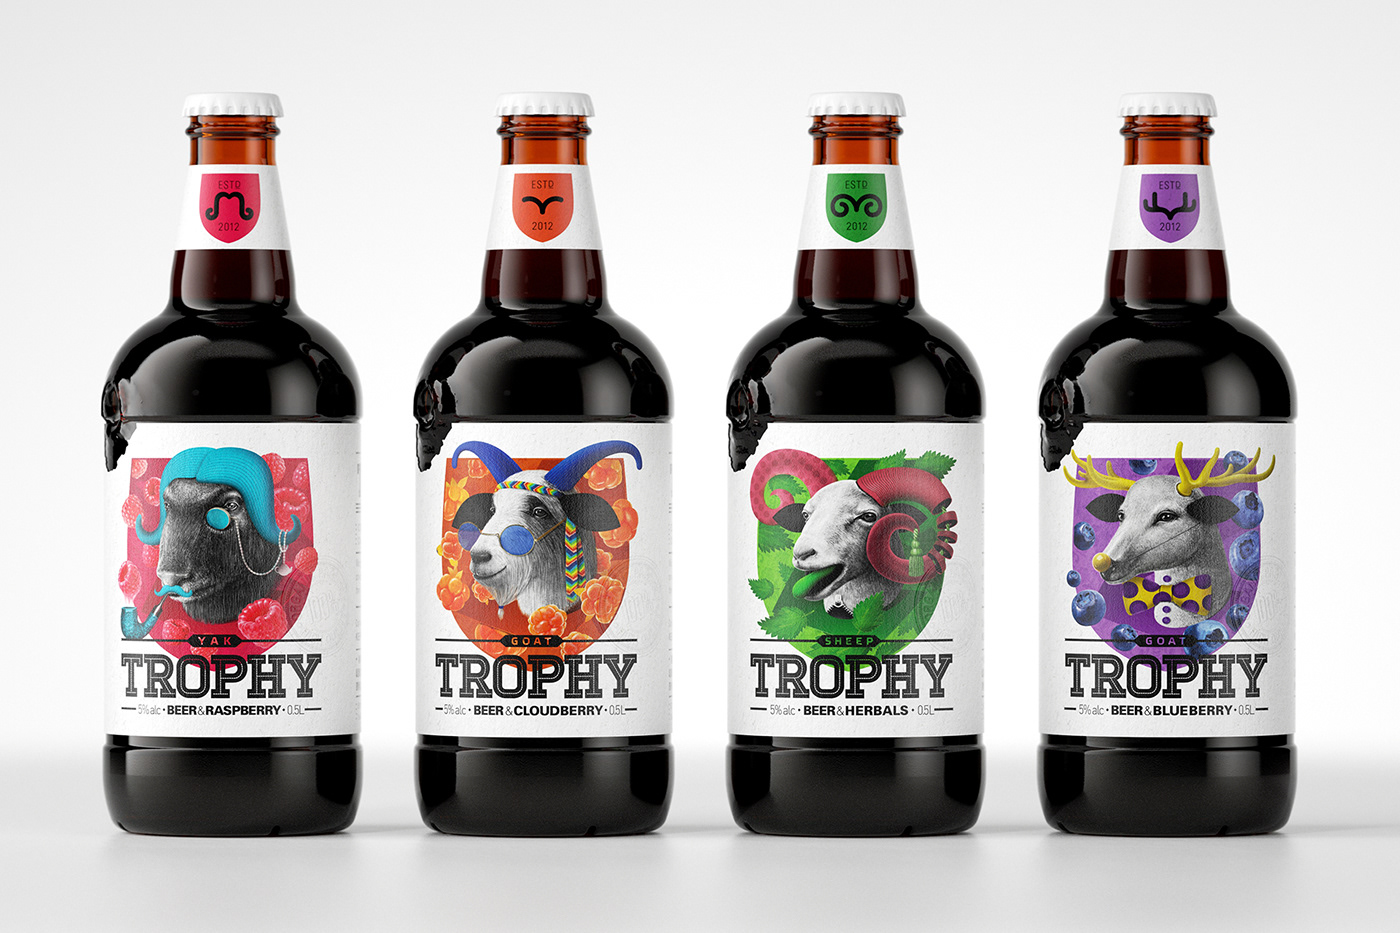 beer trophy bottle glass pentawards beverage beer label bottle design label design packaging design